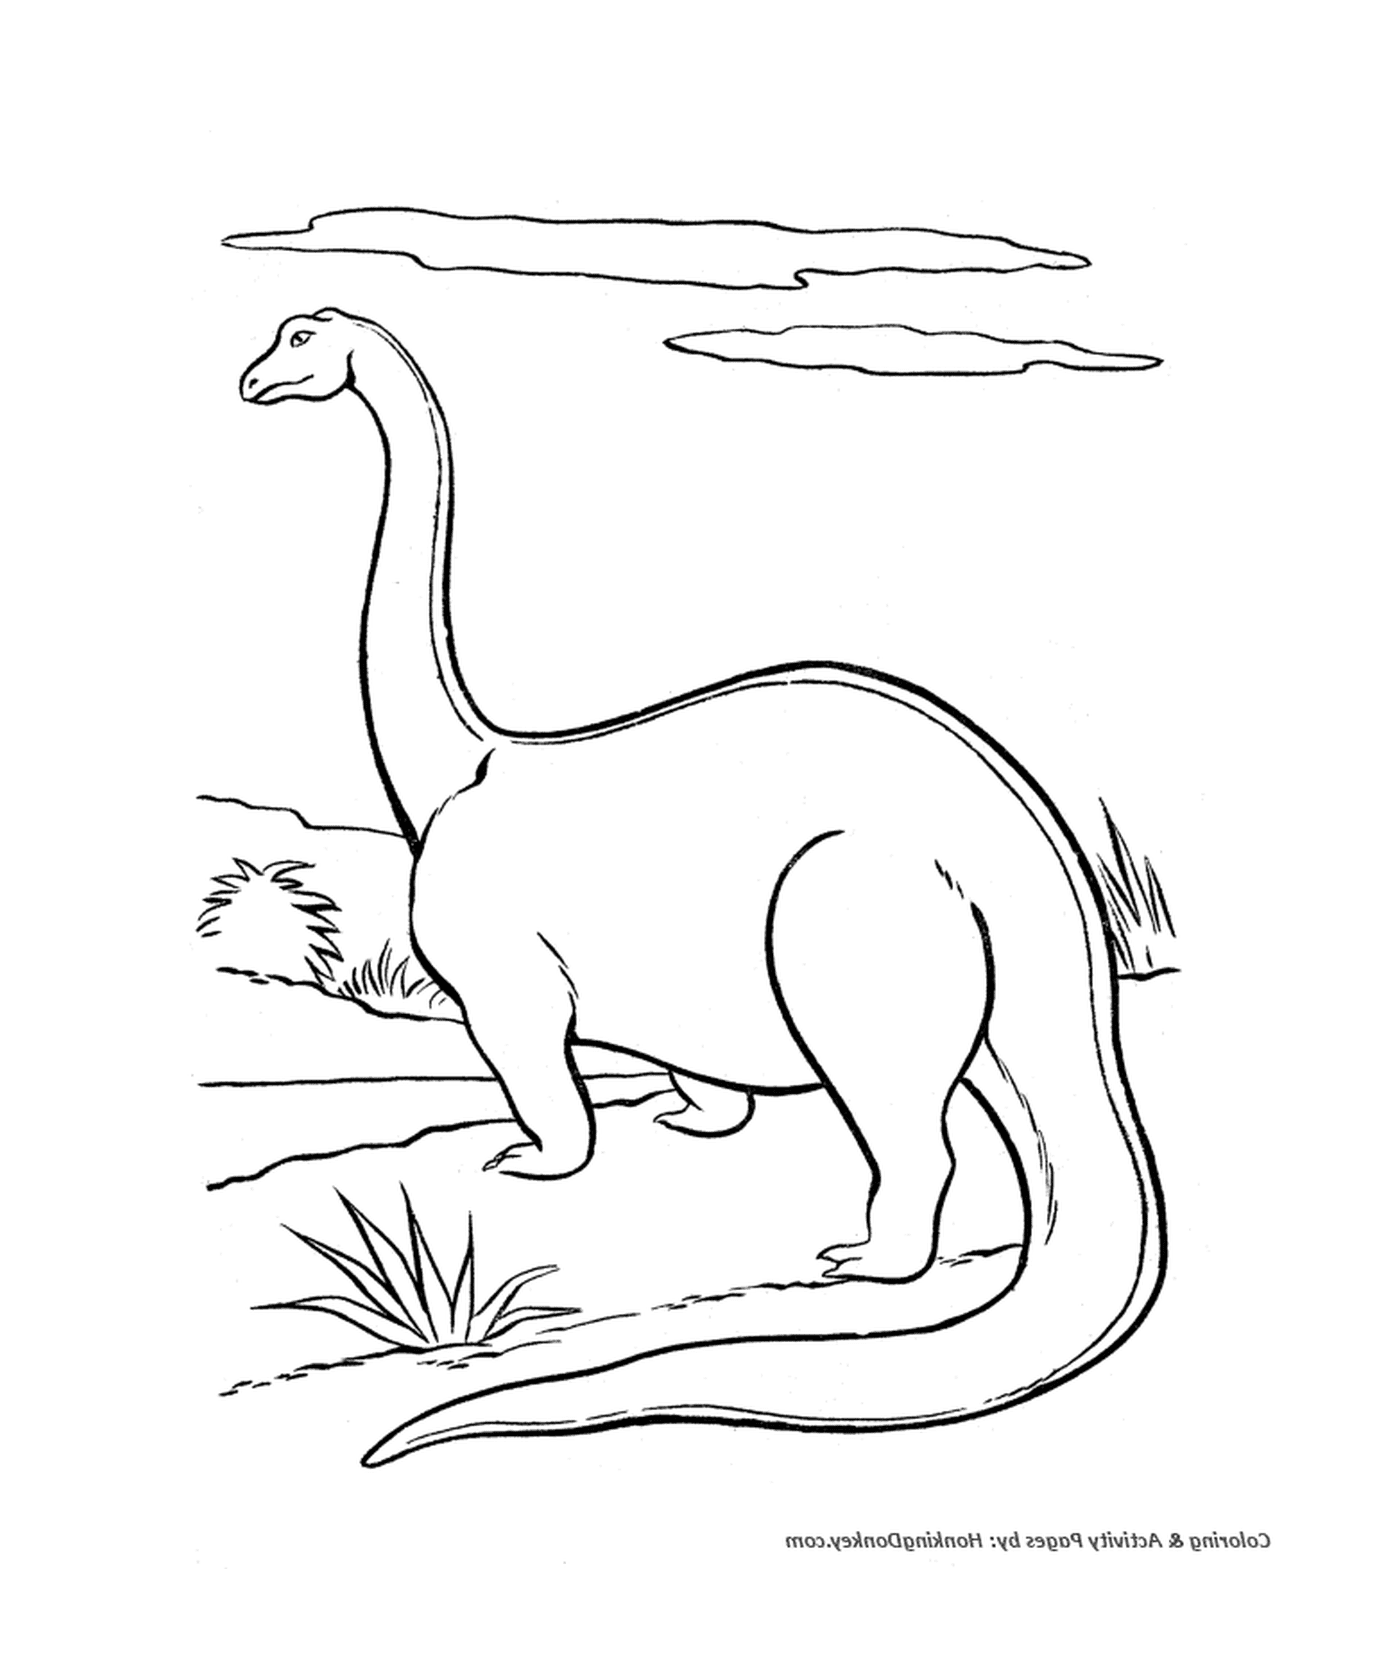  Динозавр с длинной шеей и длинными ногами 